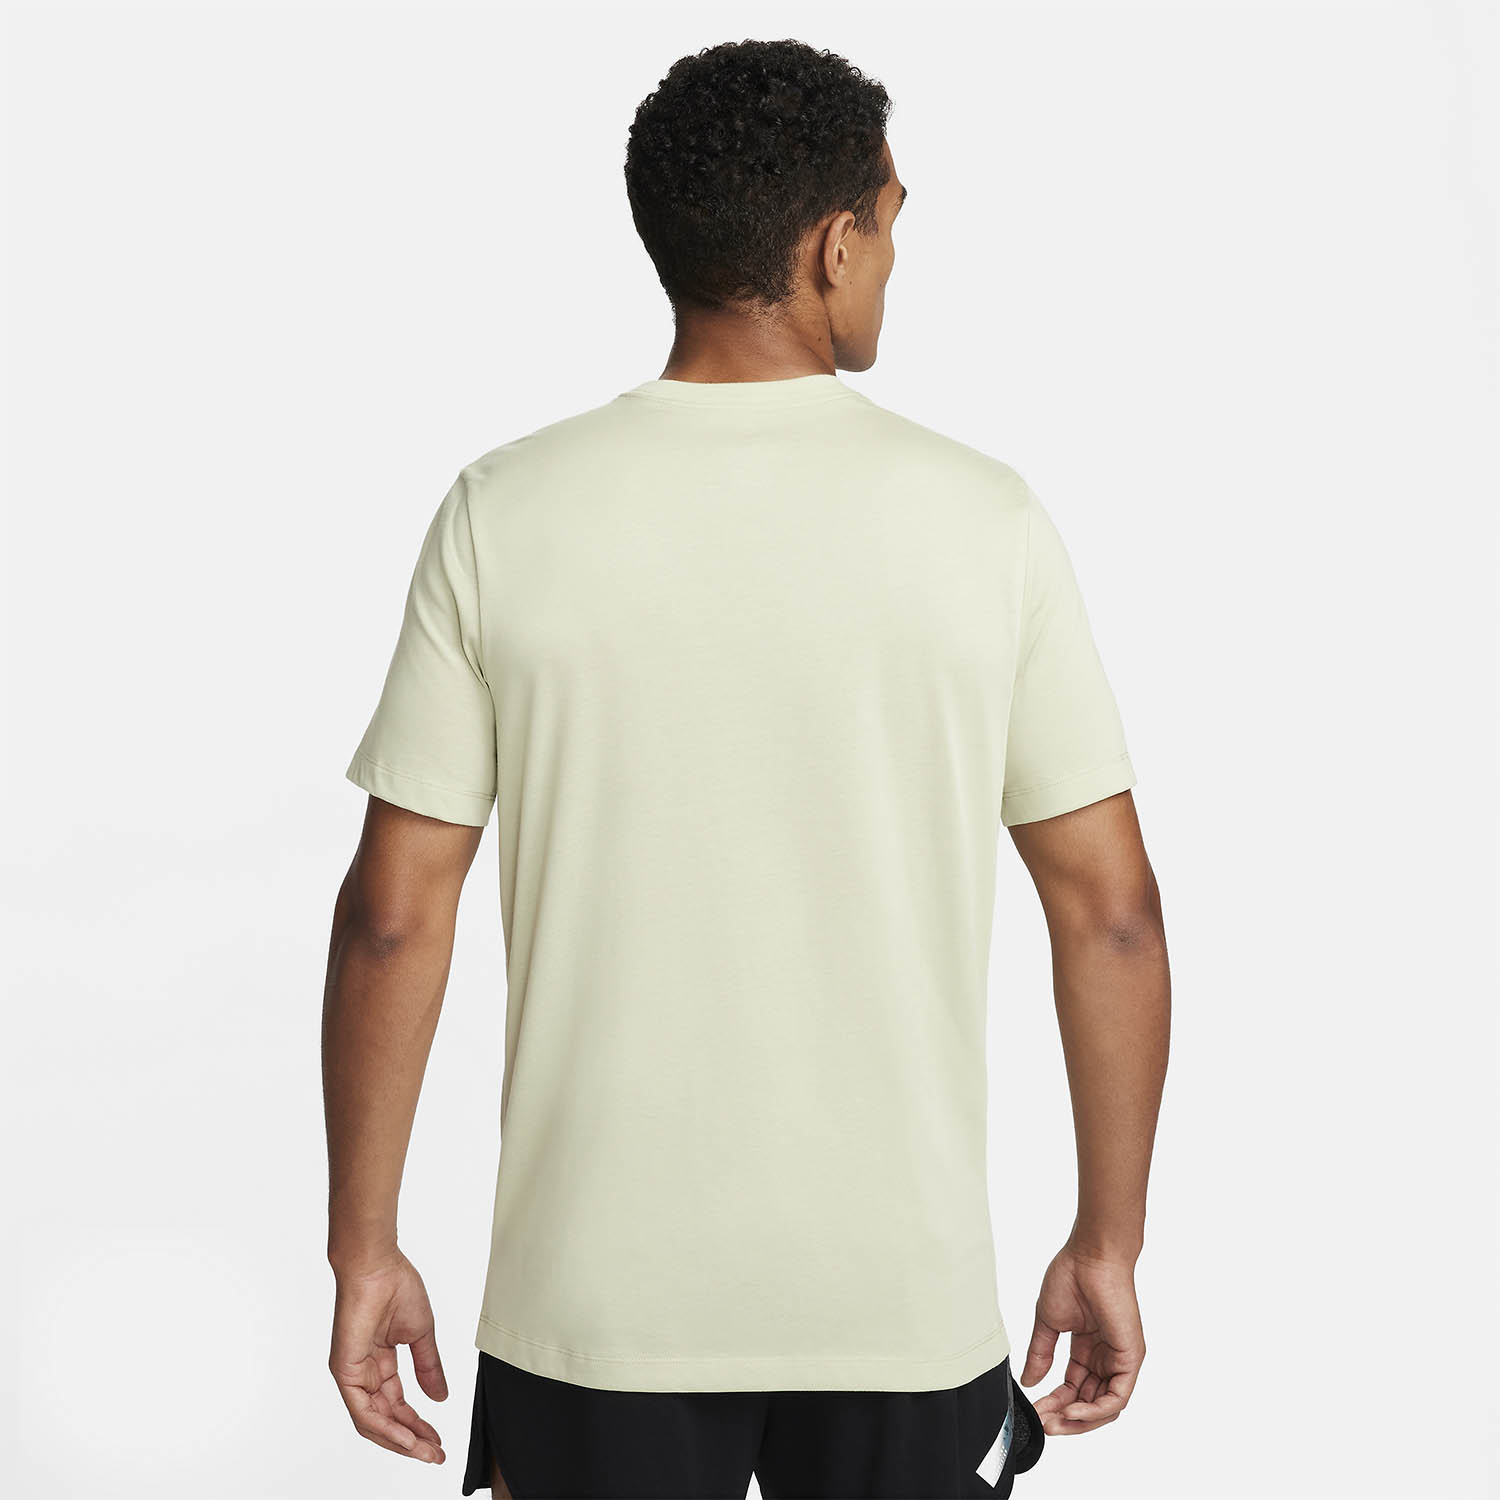 Nike Dri-FIT T-Shirt - Olive Aura